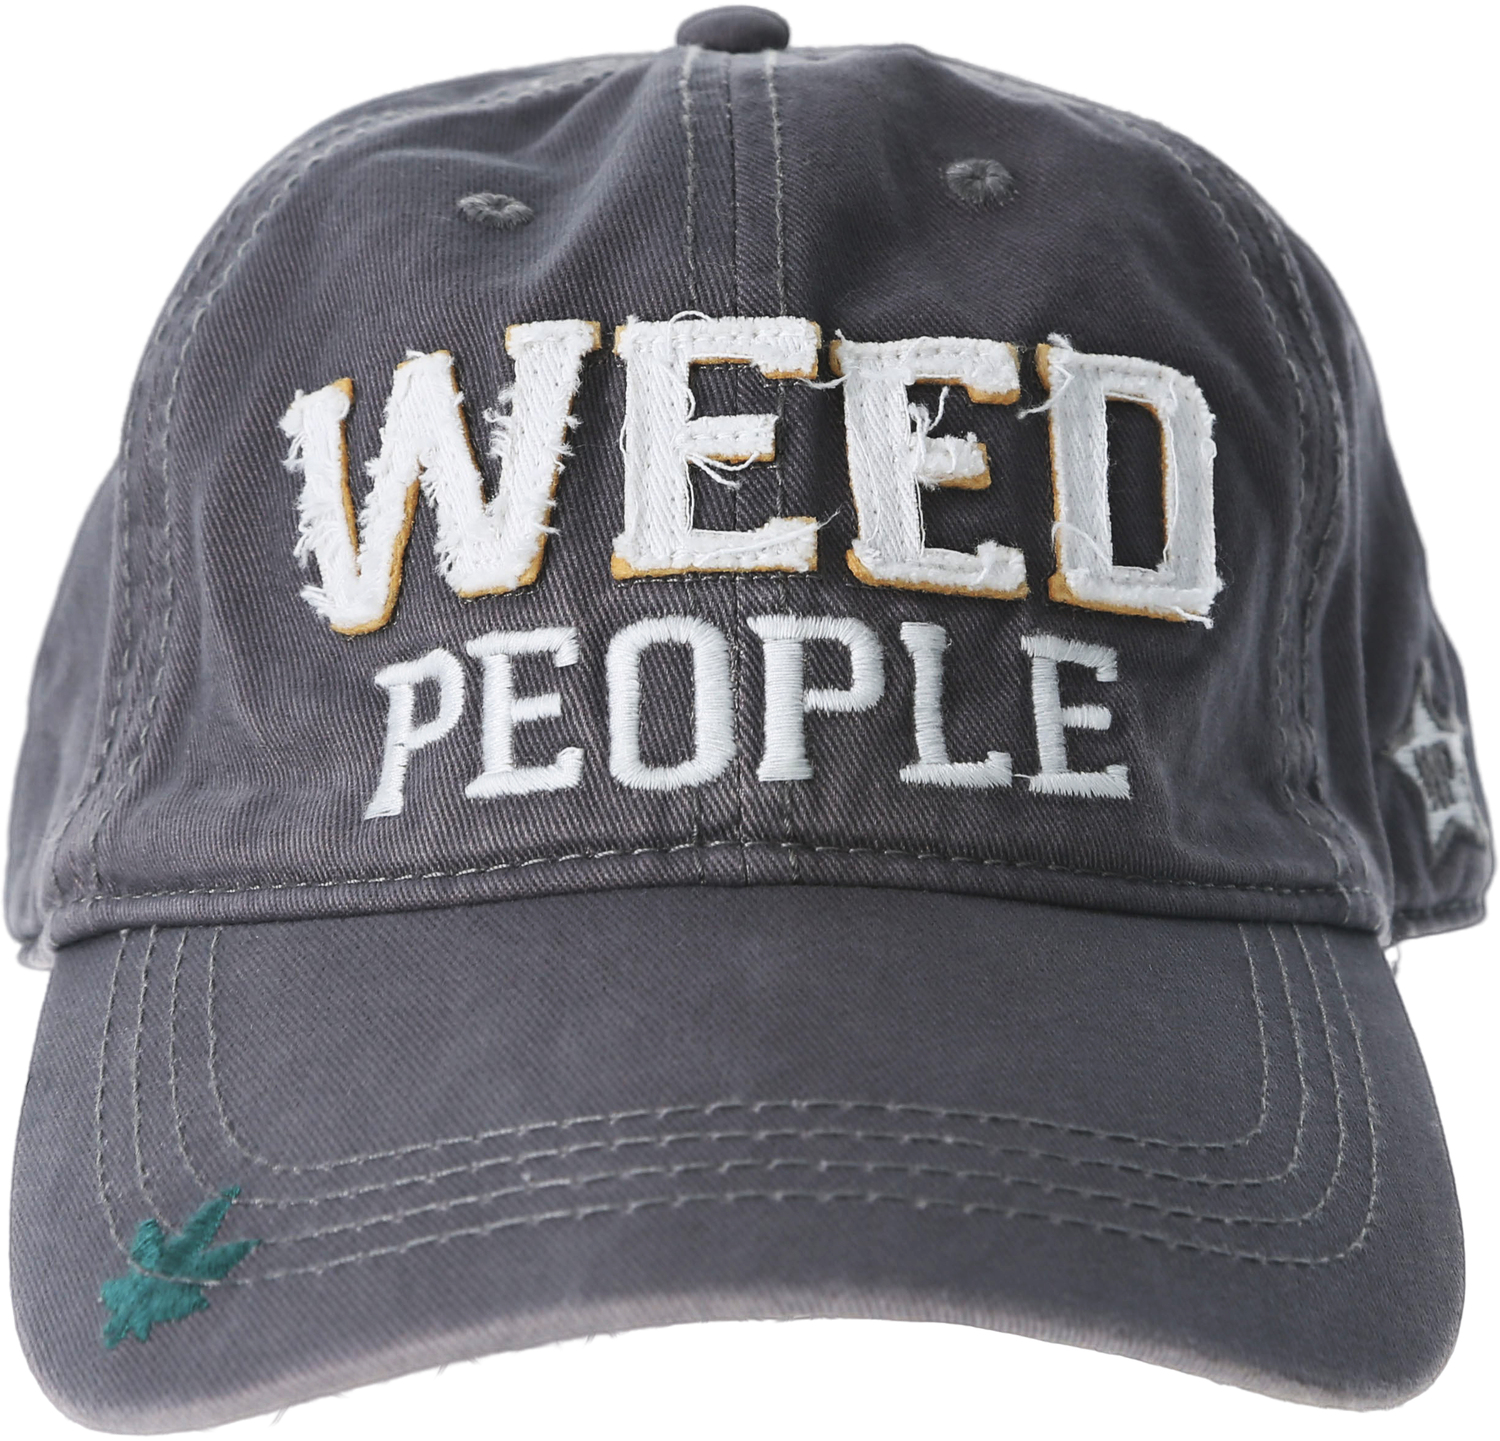 Weed People by We People - Weed People - Dark Gray Adjustable Hat